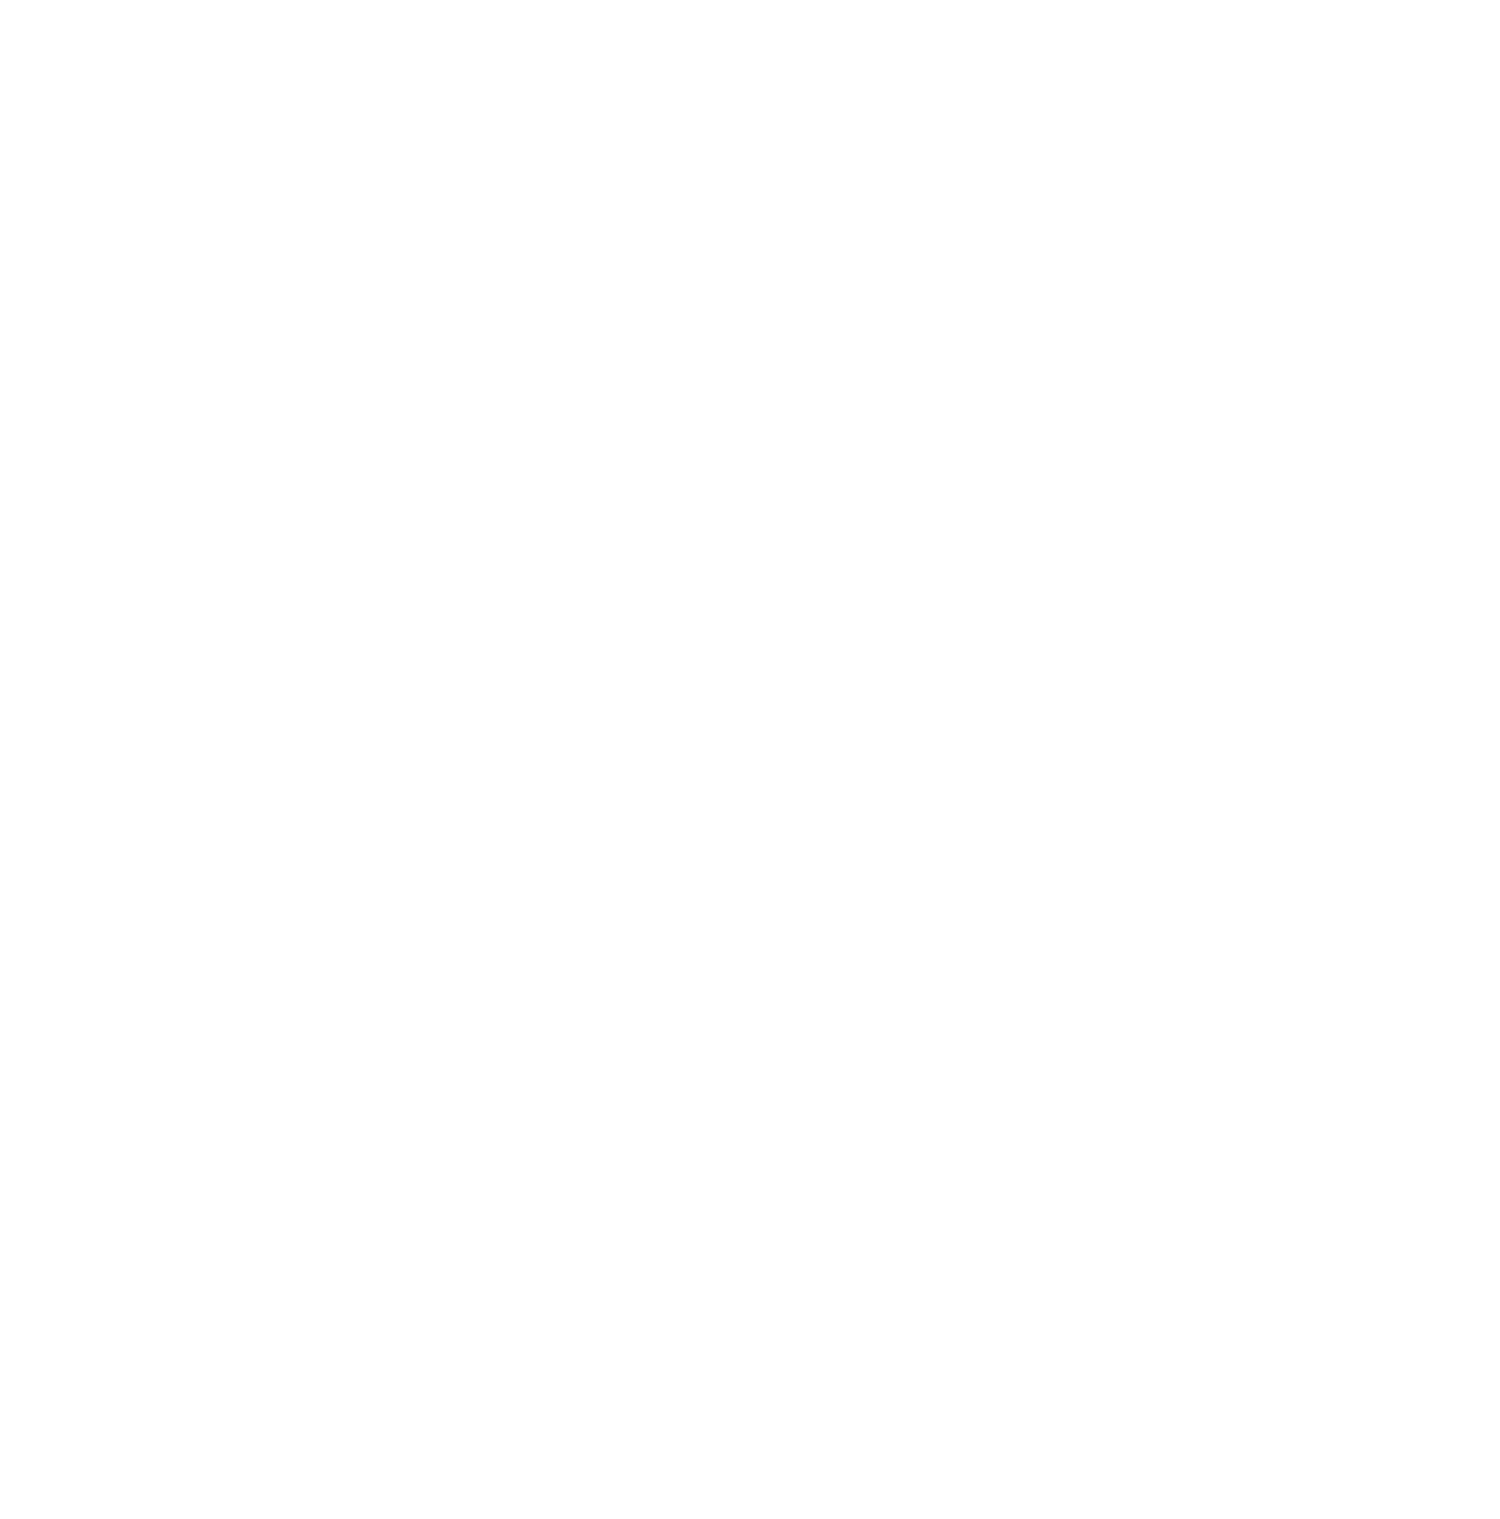 First Baptist Church East Bernstadt